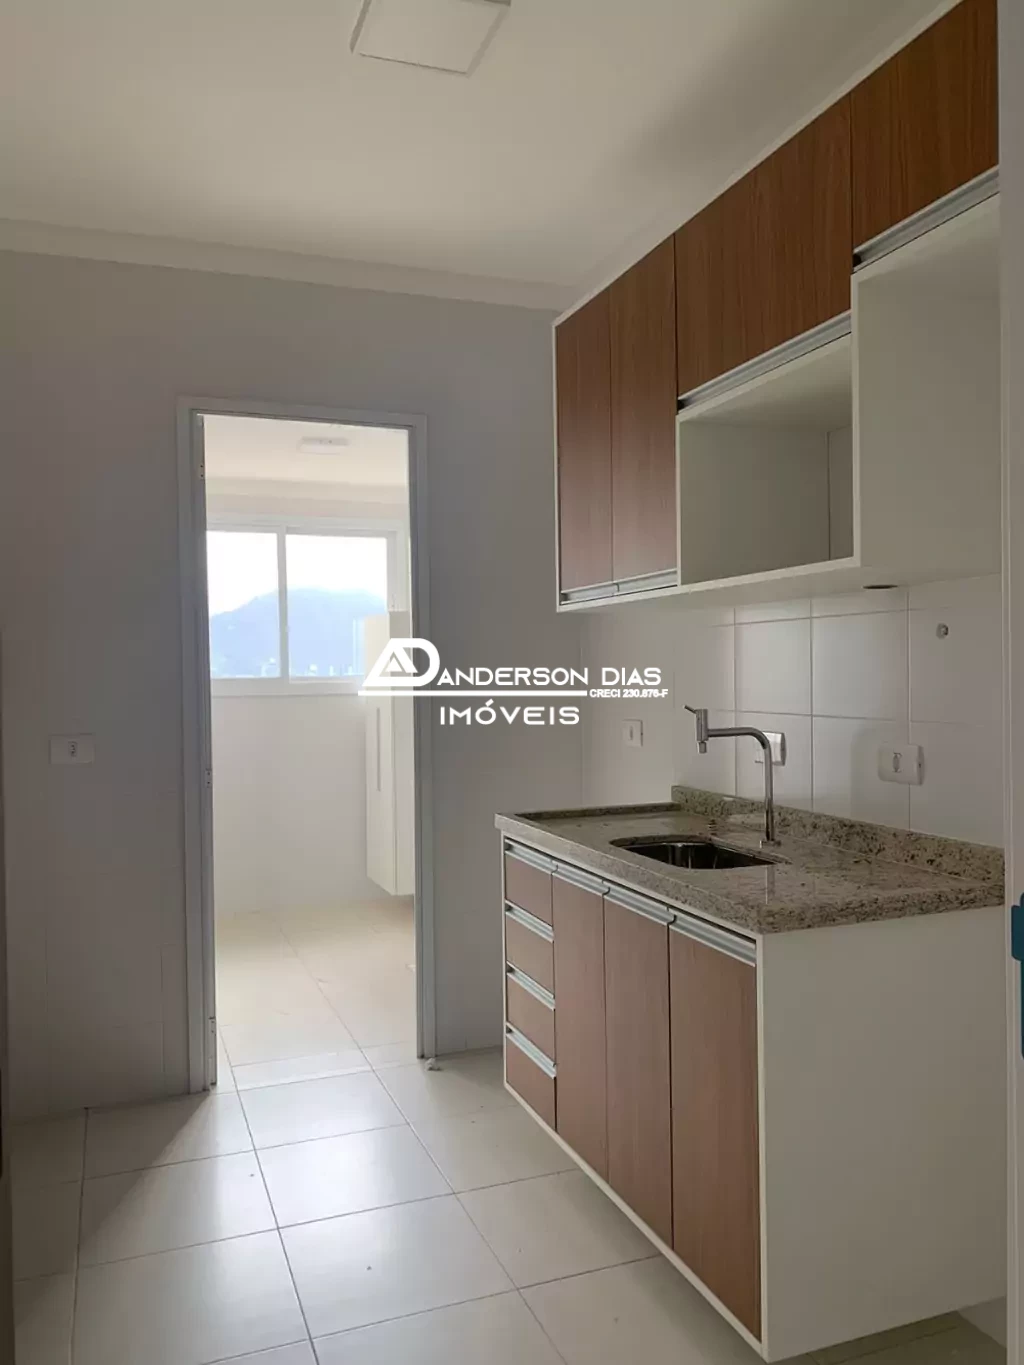 Apartamento com 3 dormitórios  à venda, 86 m² por R$ 650.000 - Indaiá - Caraguatatuba/SP